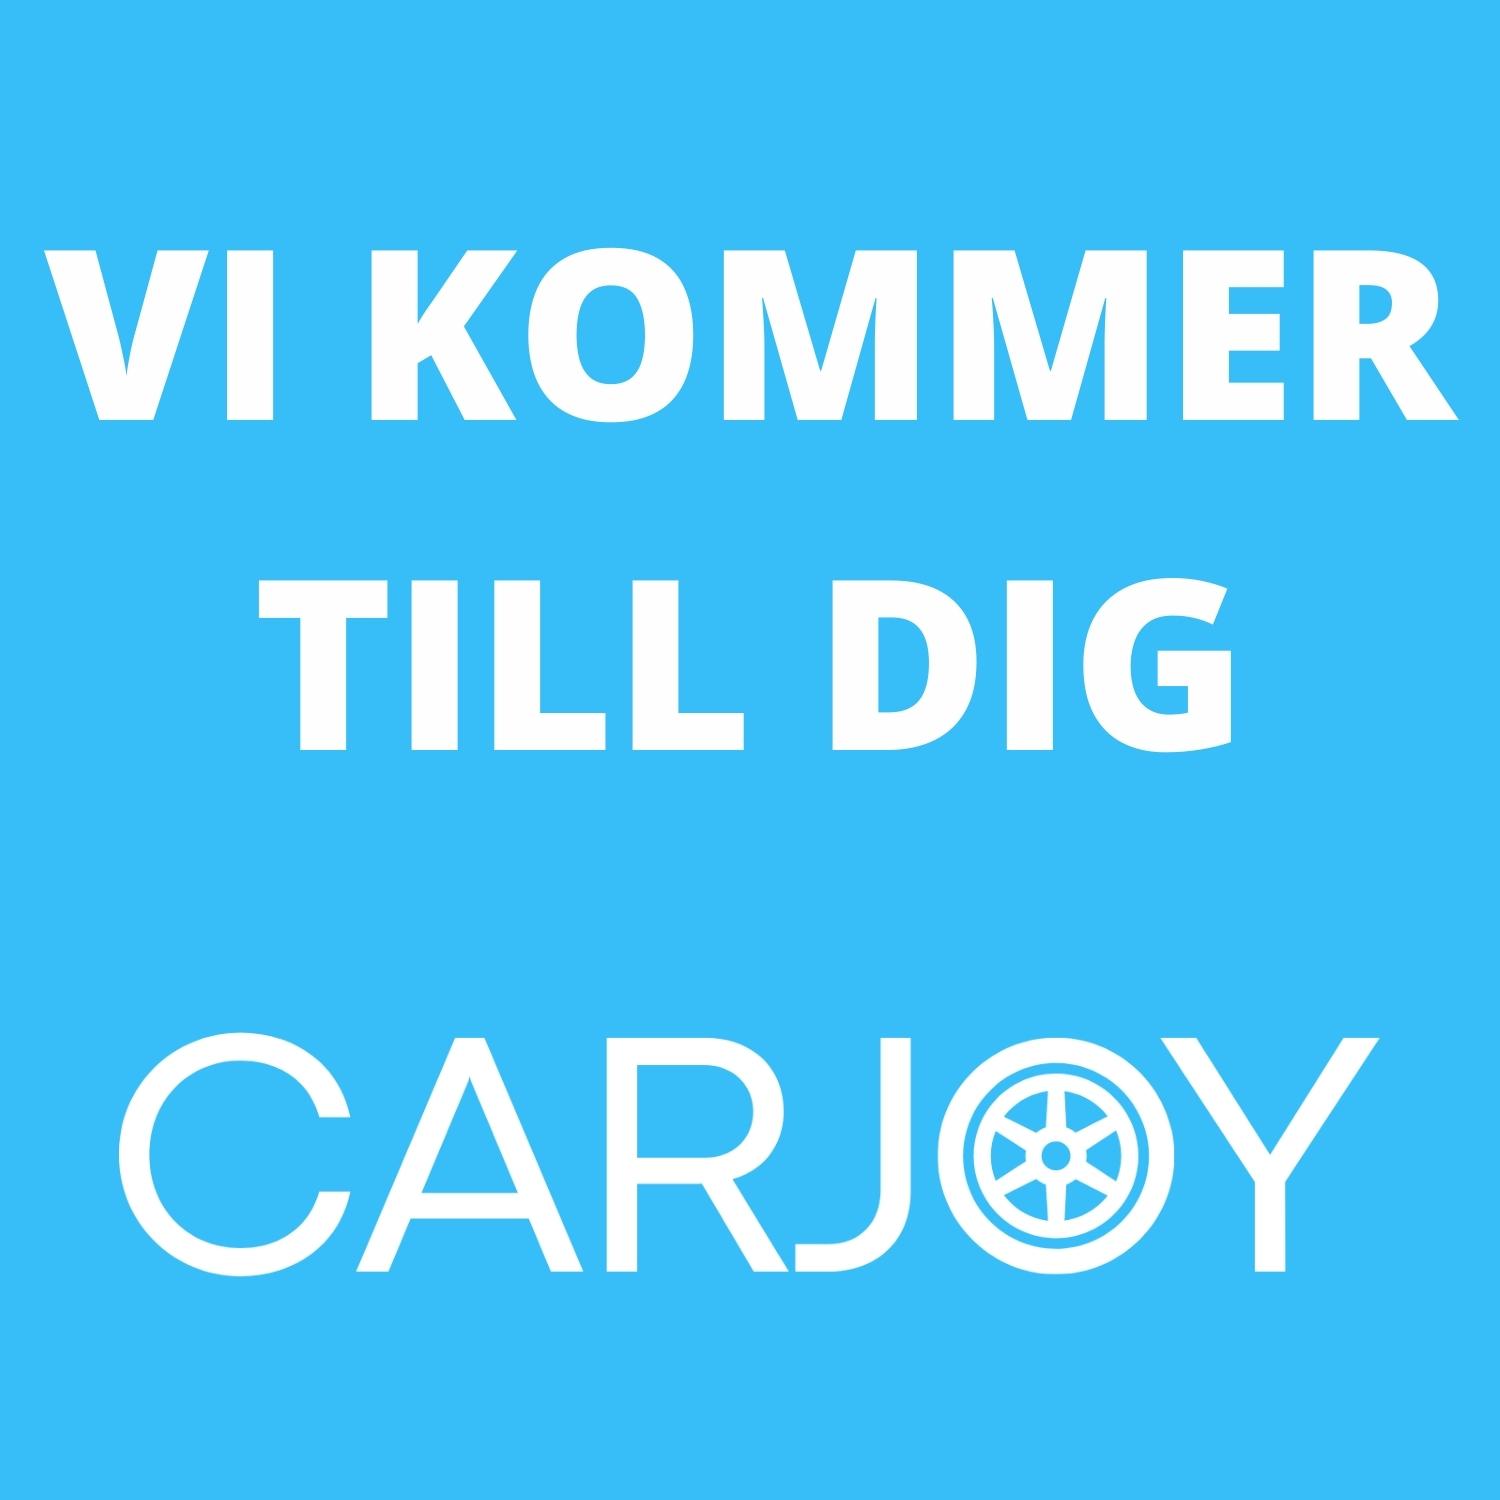 CARJOY Malmö logo